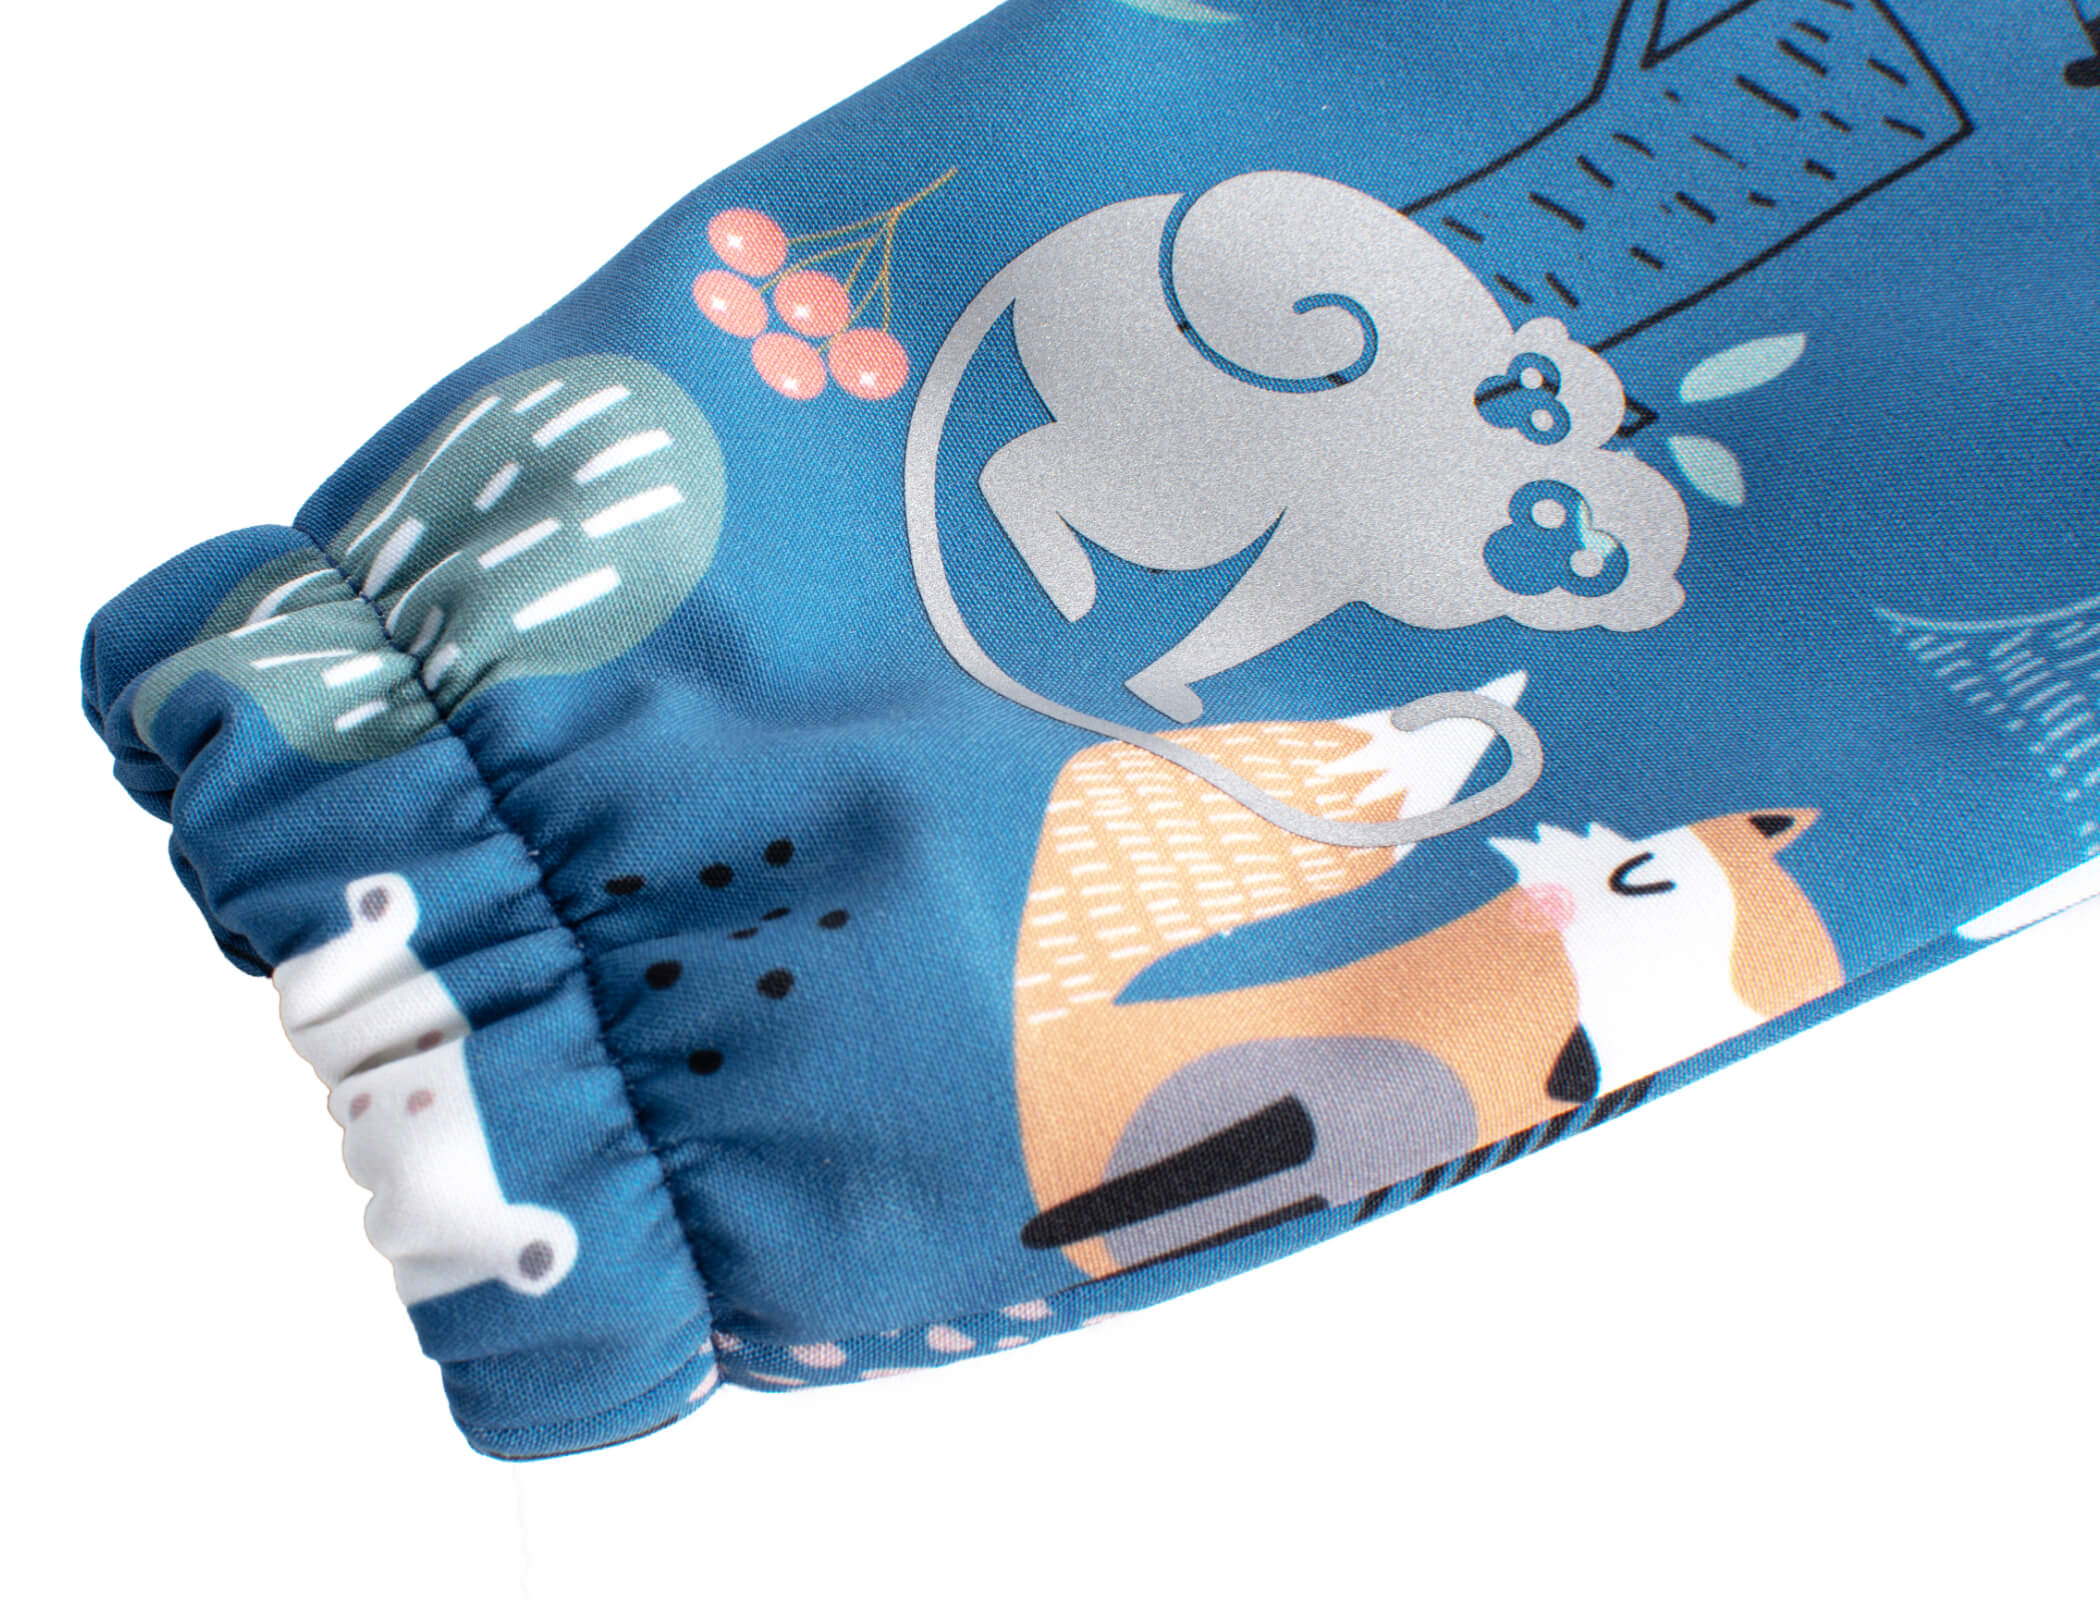 Pantaloni Softshell Per Bambini Monkey Mum® Con Membrana - Animali Notturni 74